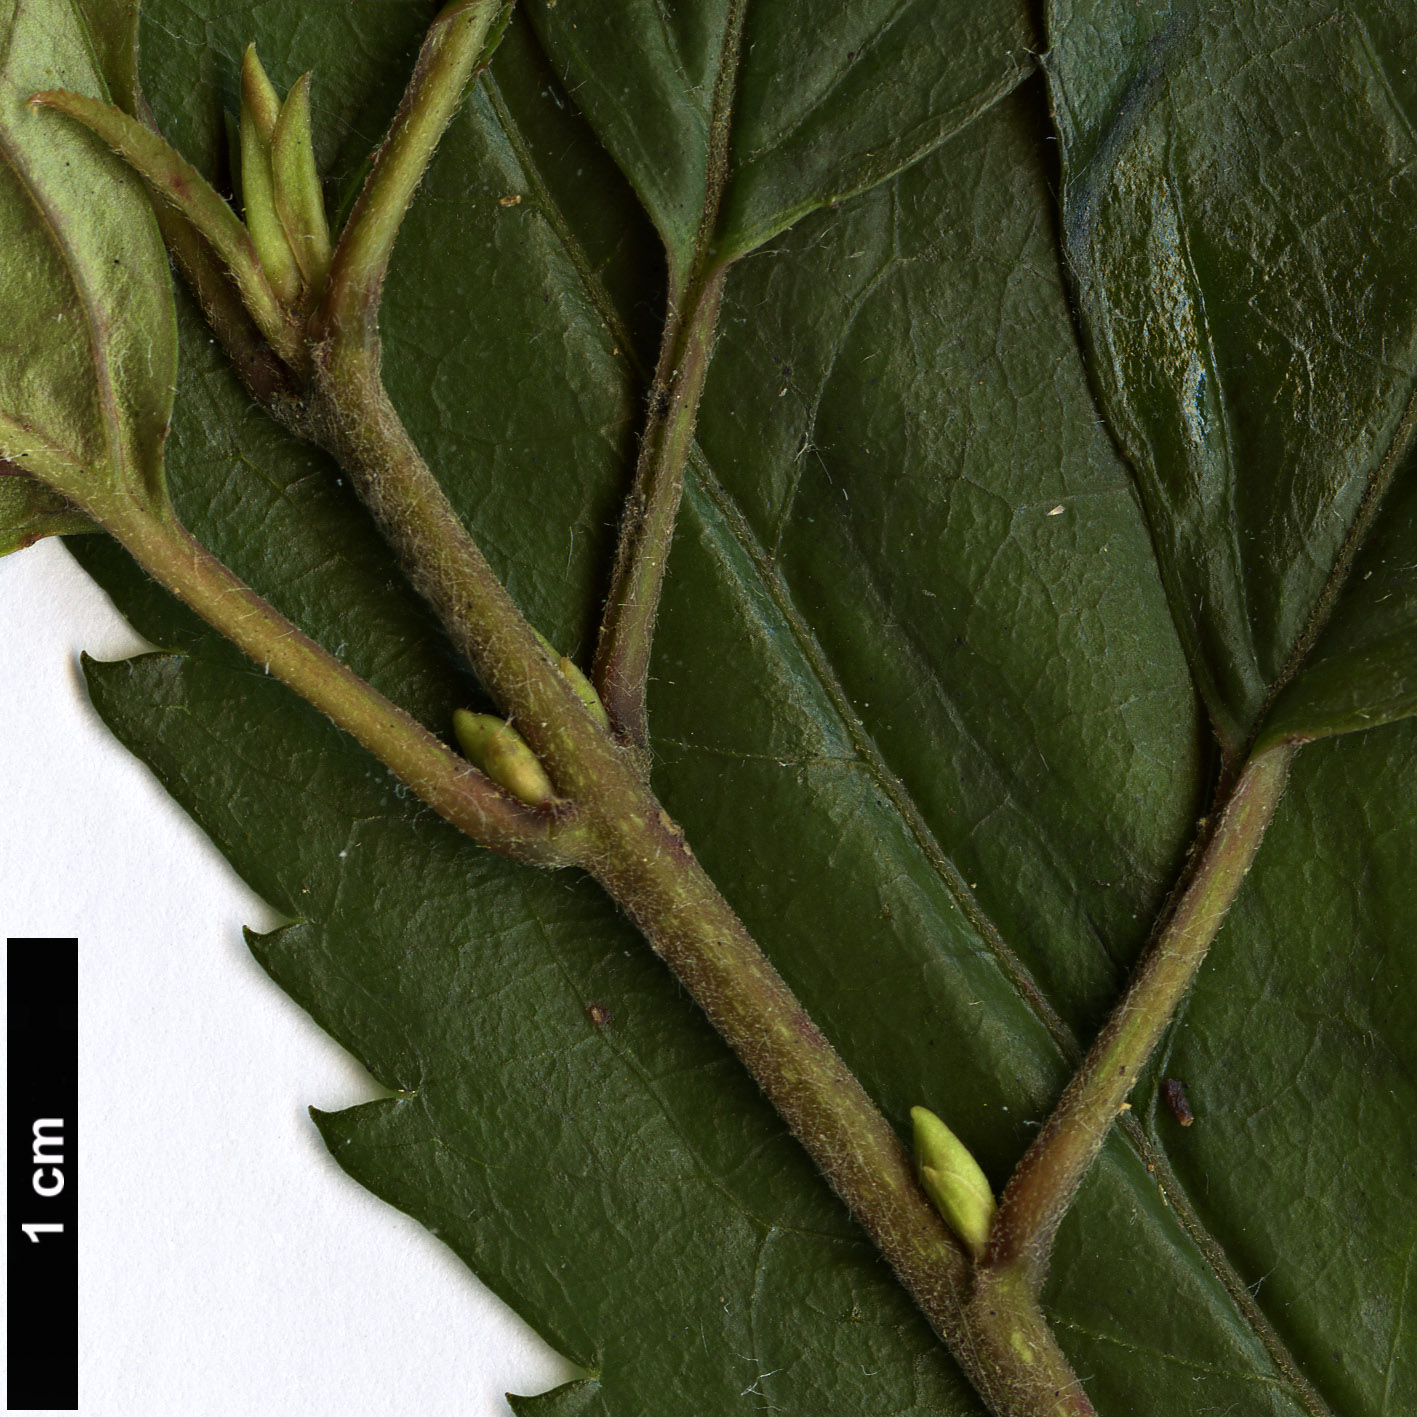 High resolution image: Family: Elaeocarpaceae - Genus: Aristotelia - Taxon: peduncularis